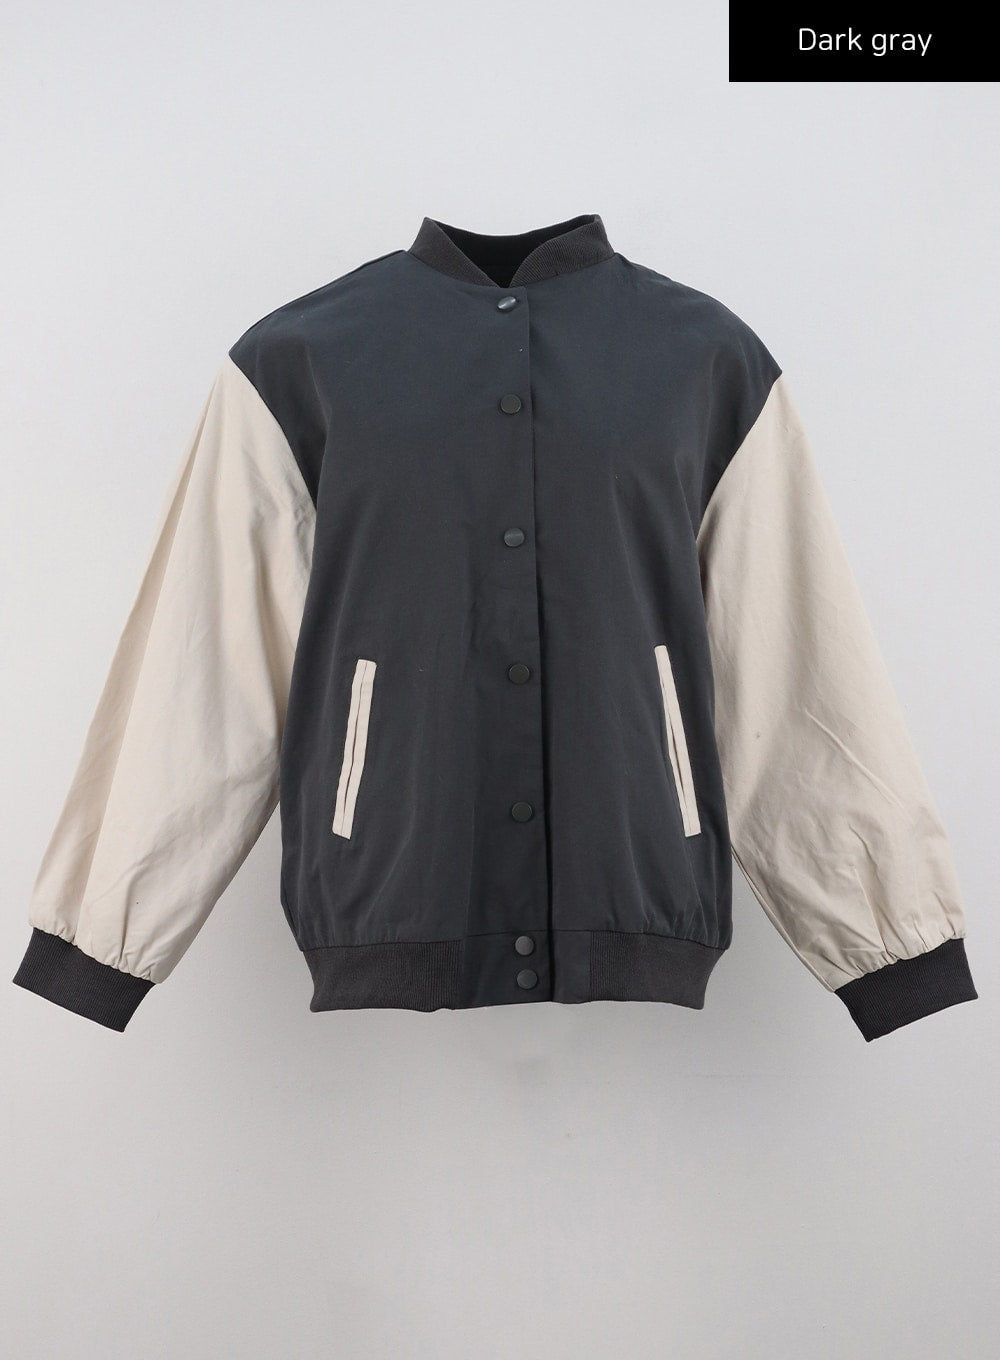 two-toned-varsity-jacket-cd304-1 / Dark gray